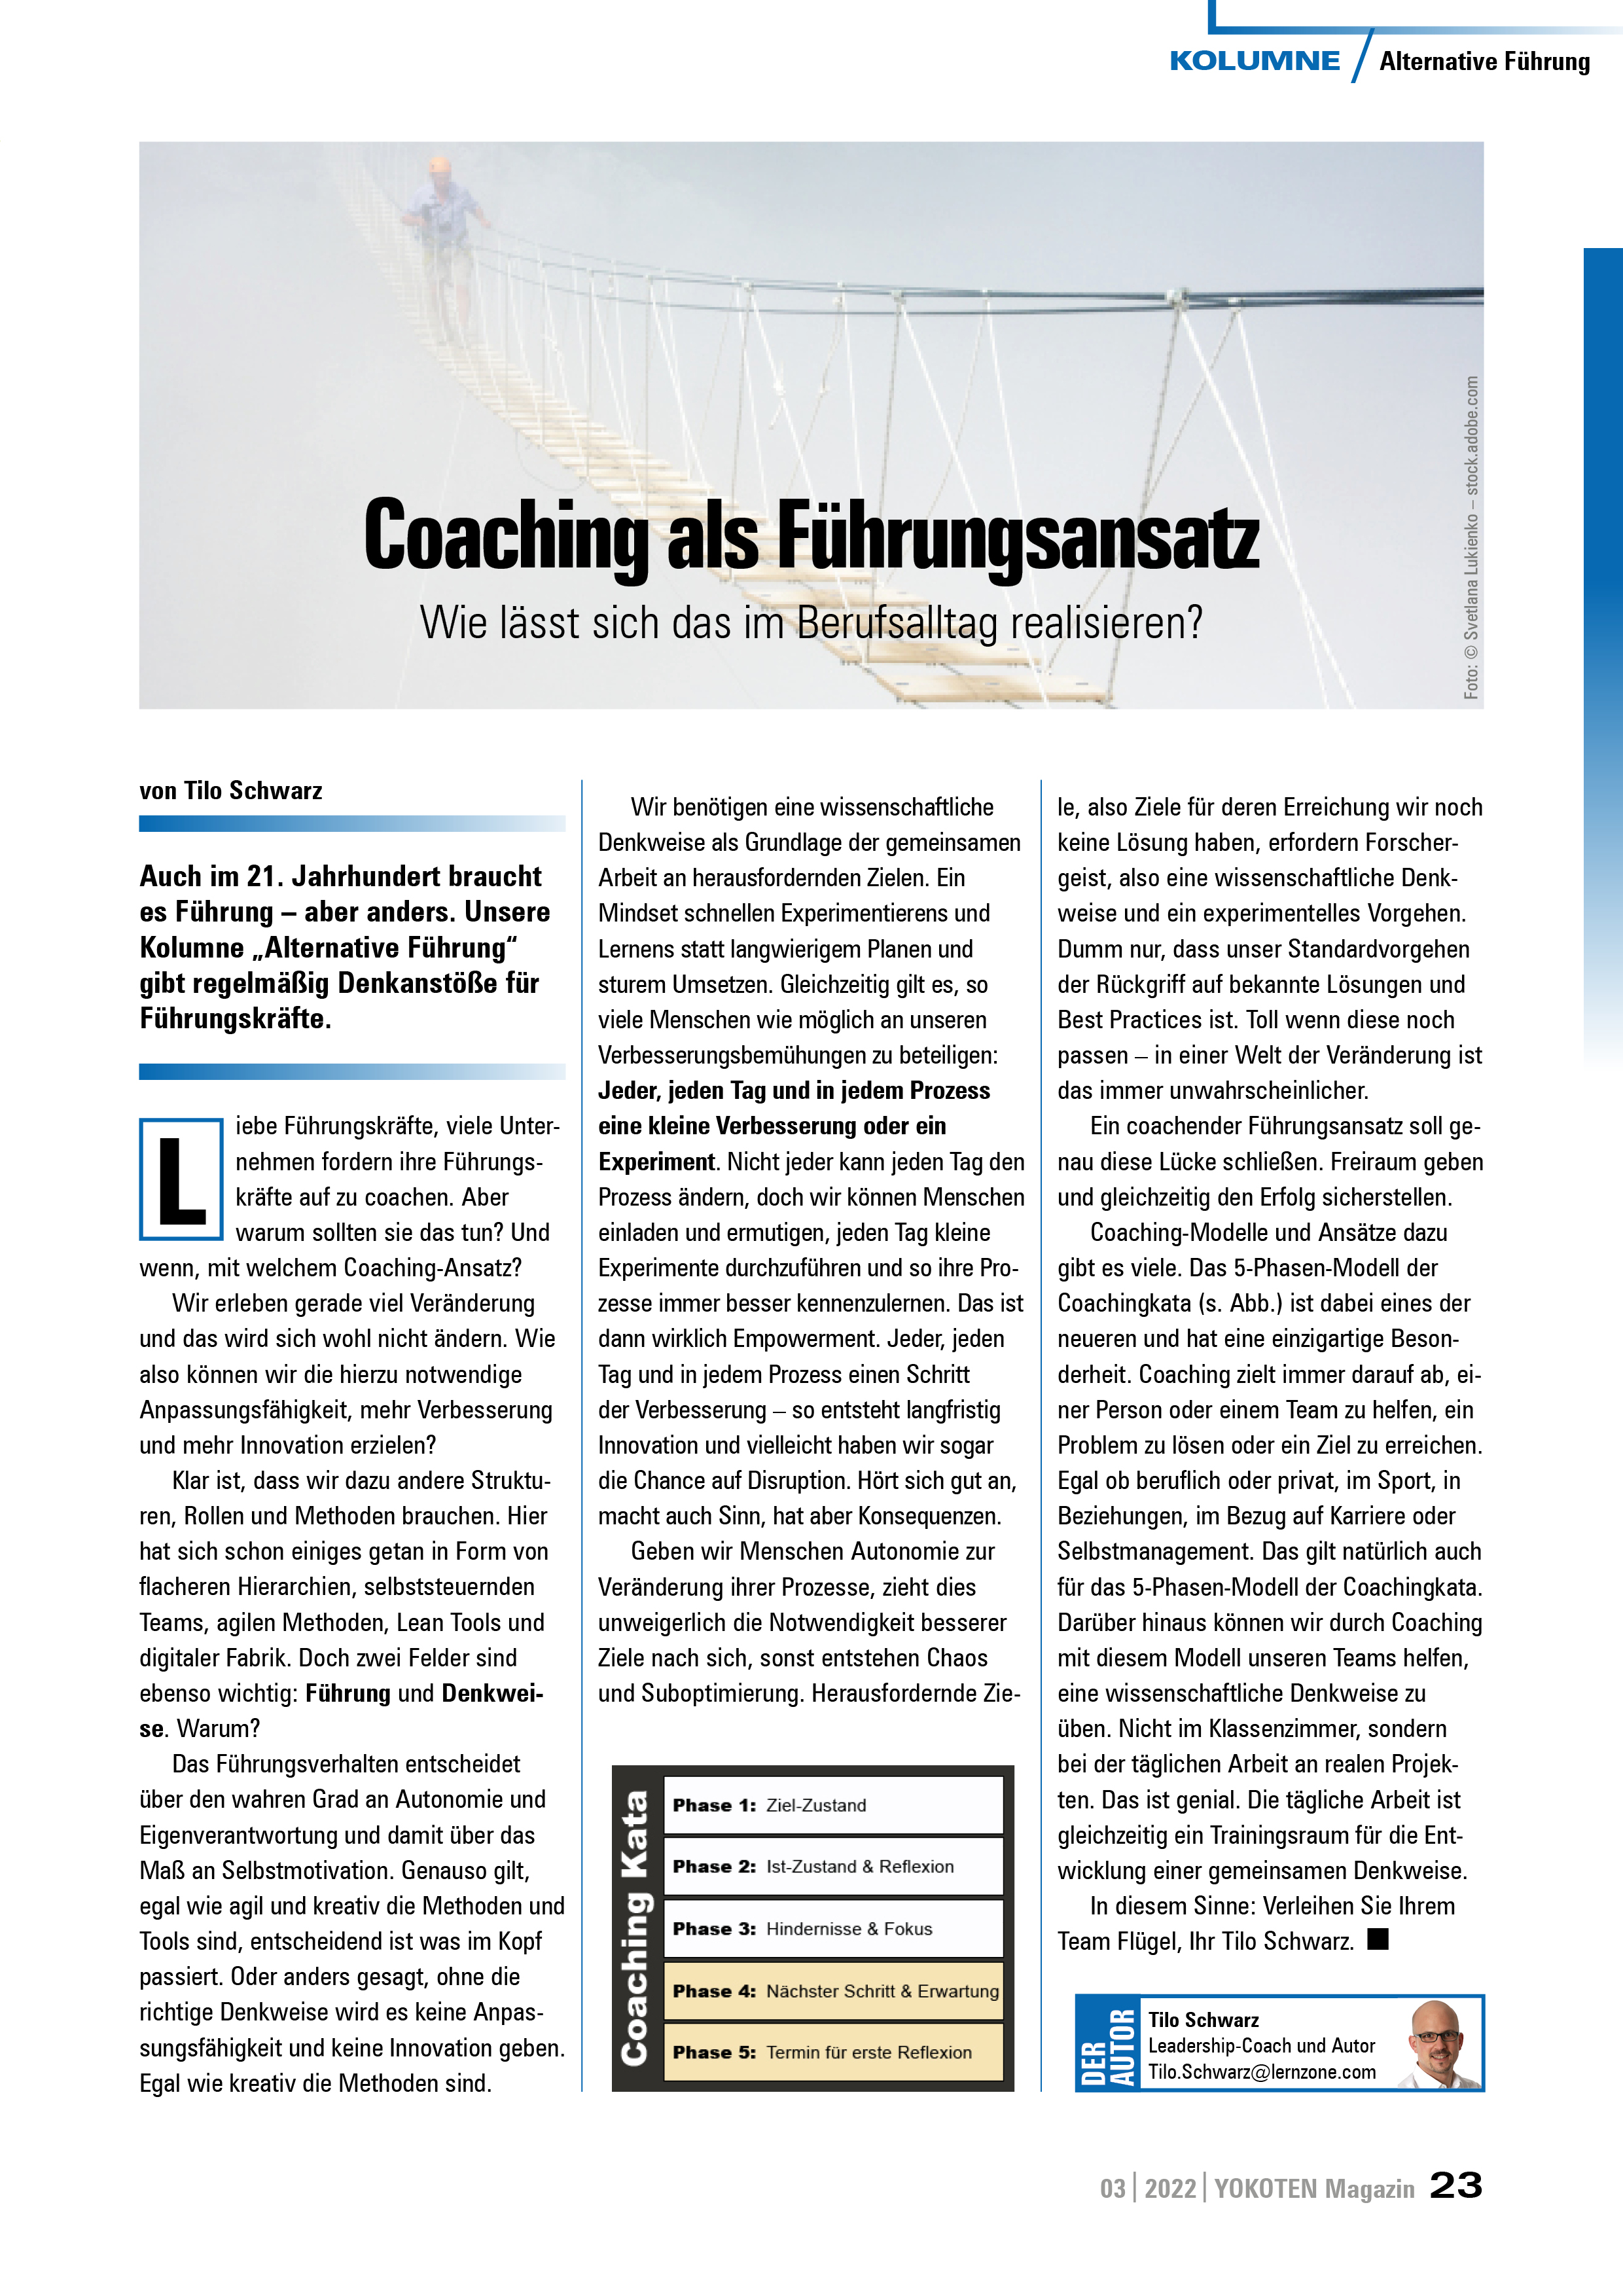 Coaching als Führungsansatz - Artikel aus Fachmagazin YOKOTEN 2022-03